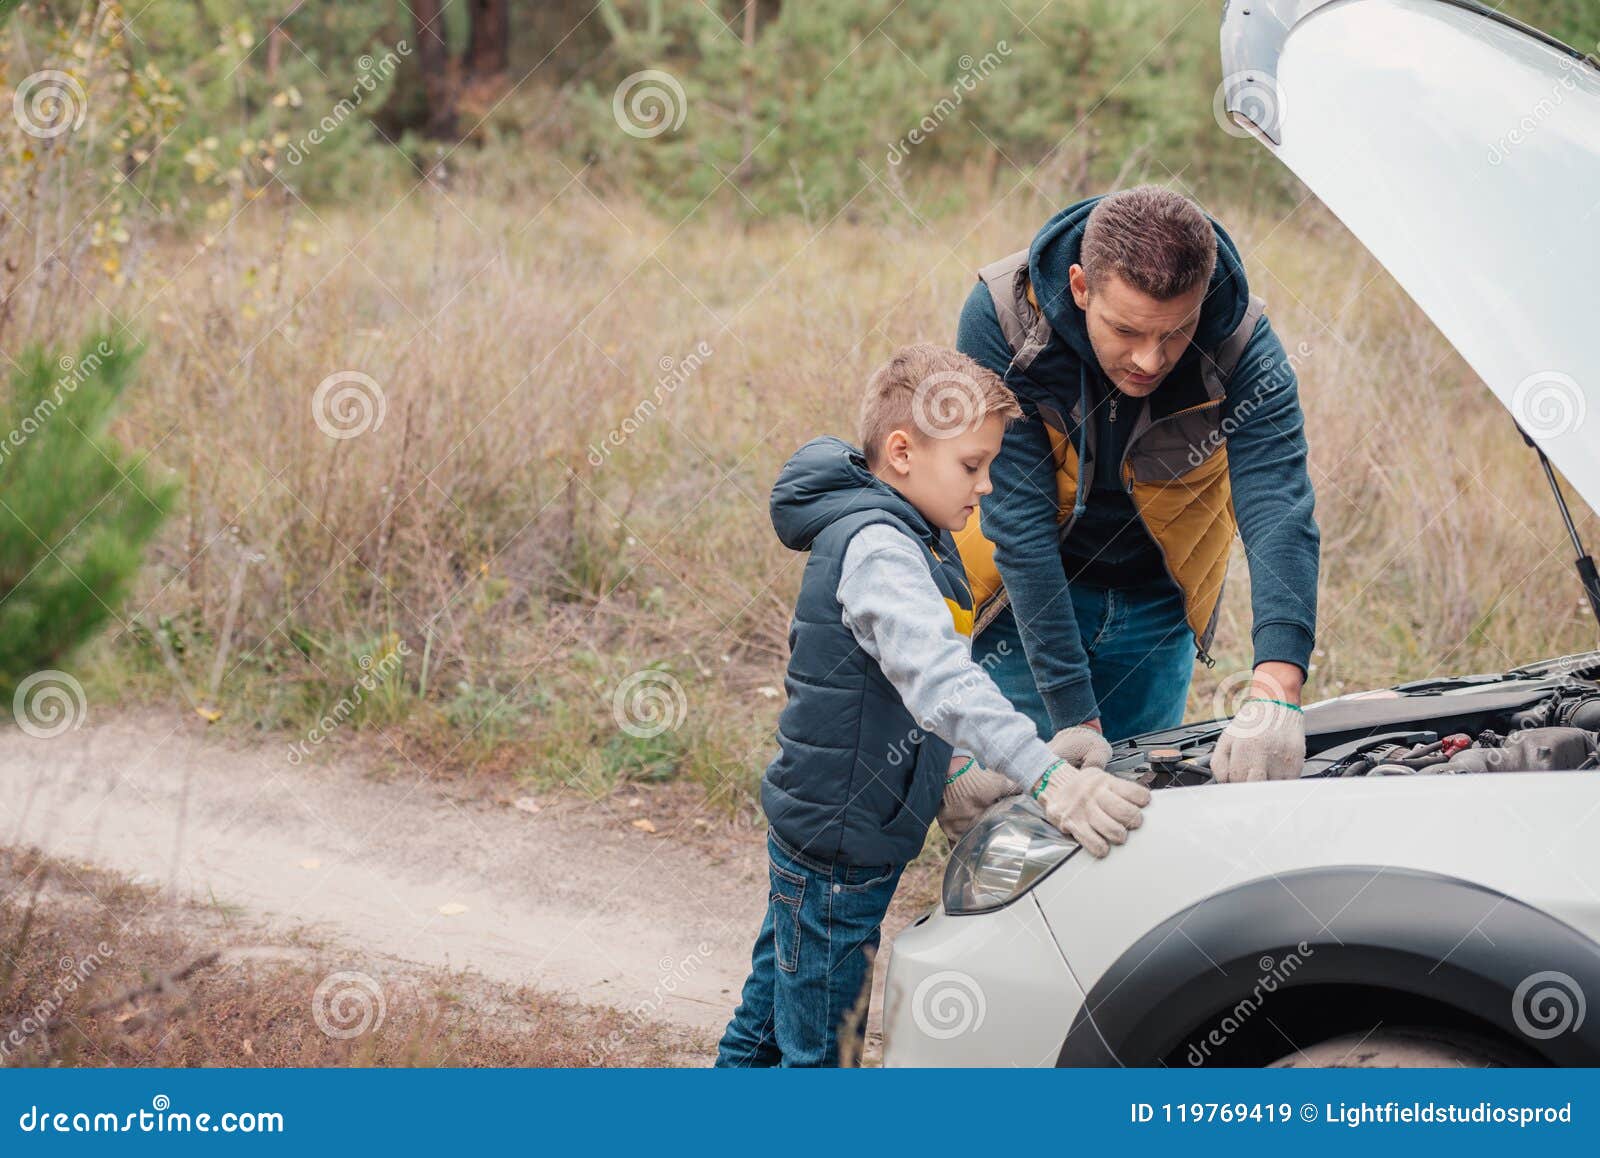 Как пользоваться автомобилем сына. Папа с свном ремонтирую машину. Папа с сыном ремонтируют машину. Фотосессия с сыном и машиной. Фотосессия папы с сыном и машиной.